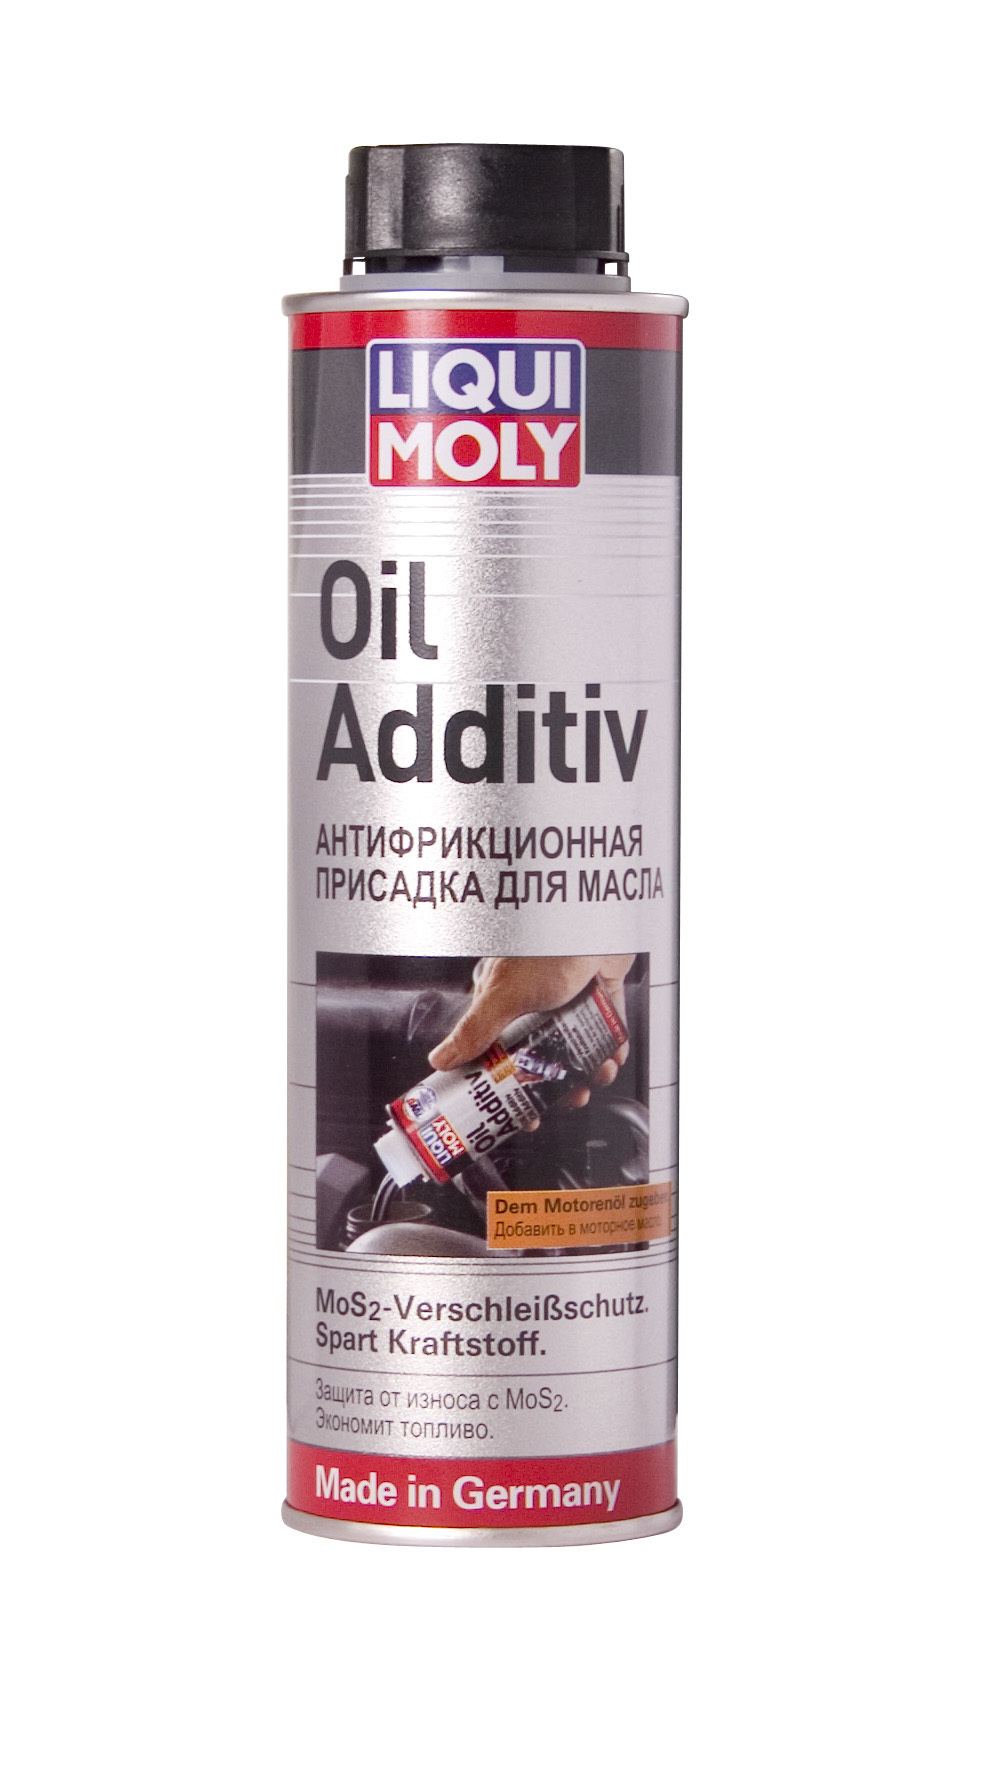 Антифрикционная присадка Liqui Moly Oil Additiv с дисульфидом молибдена, 0,3 л